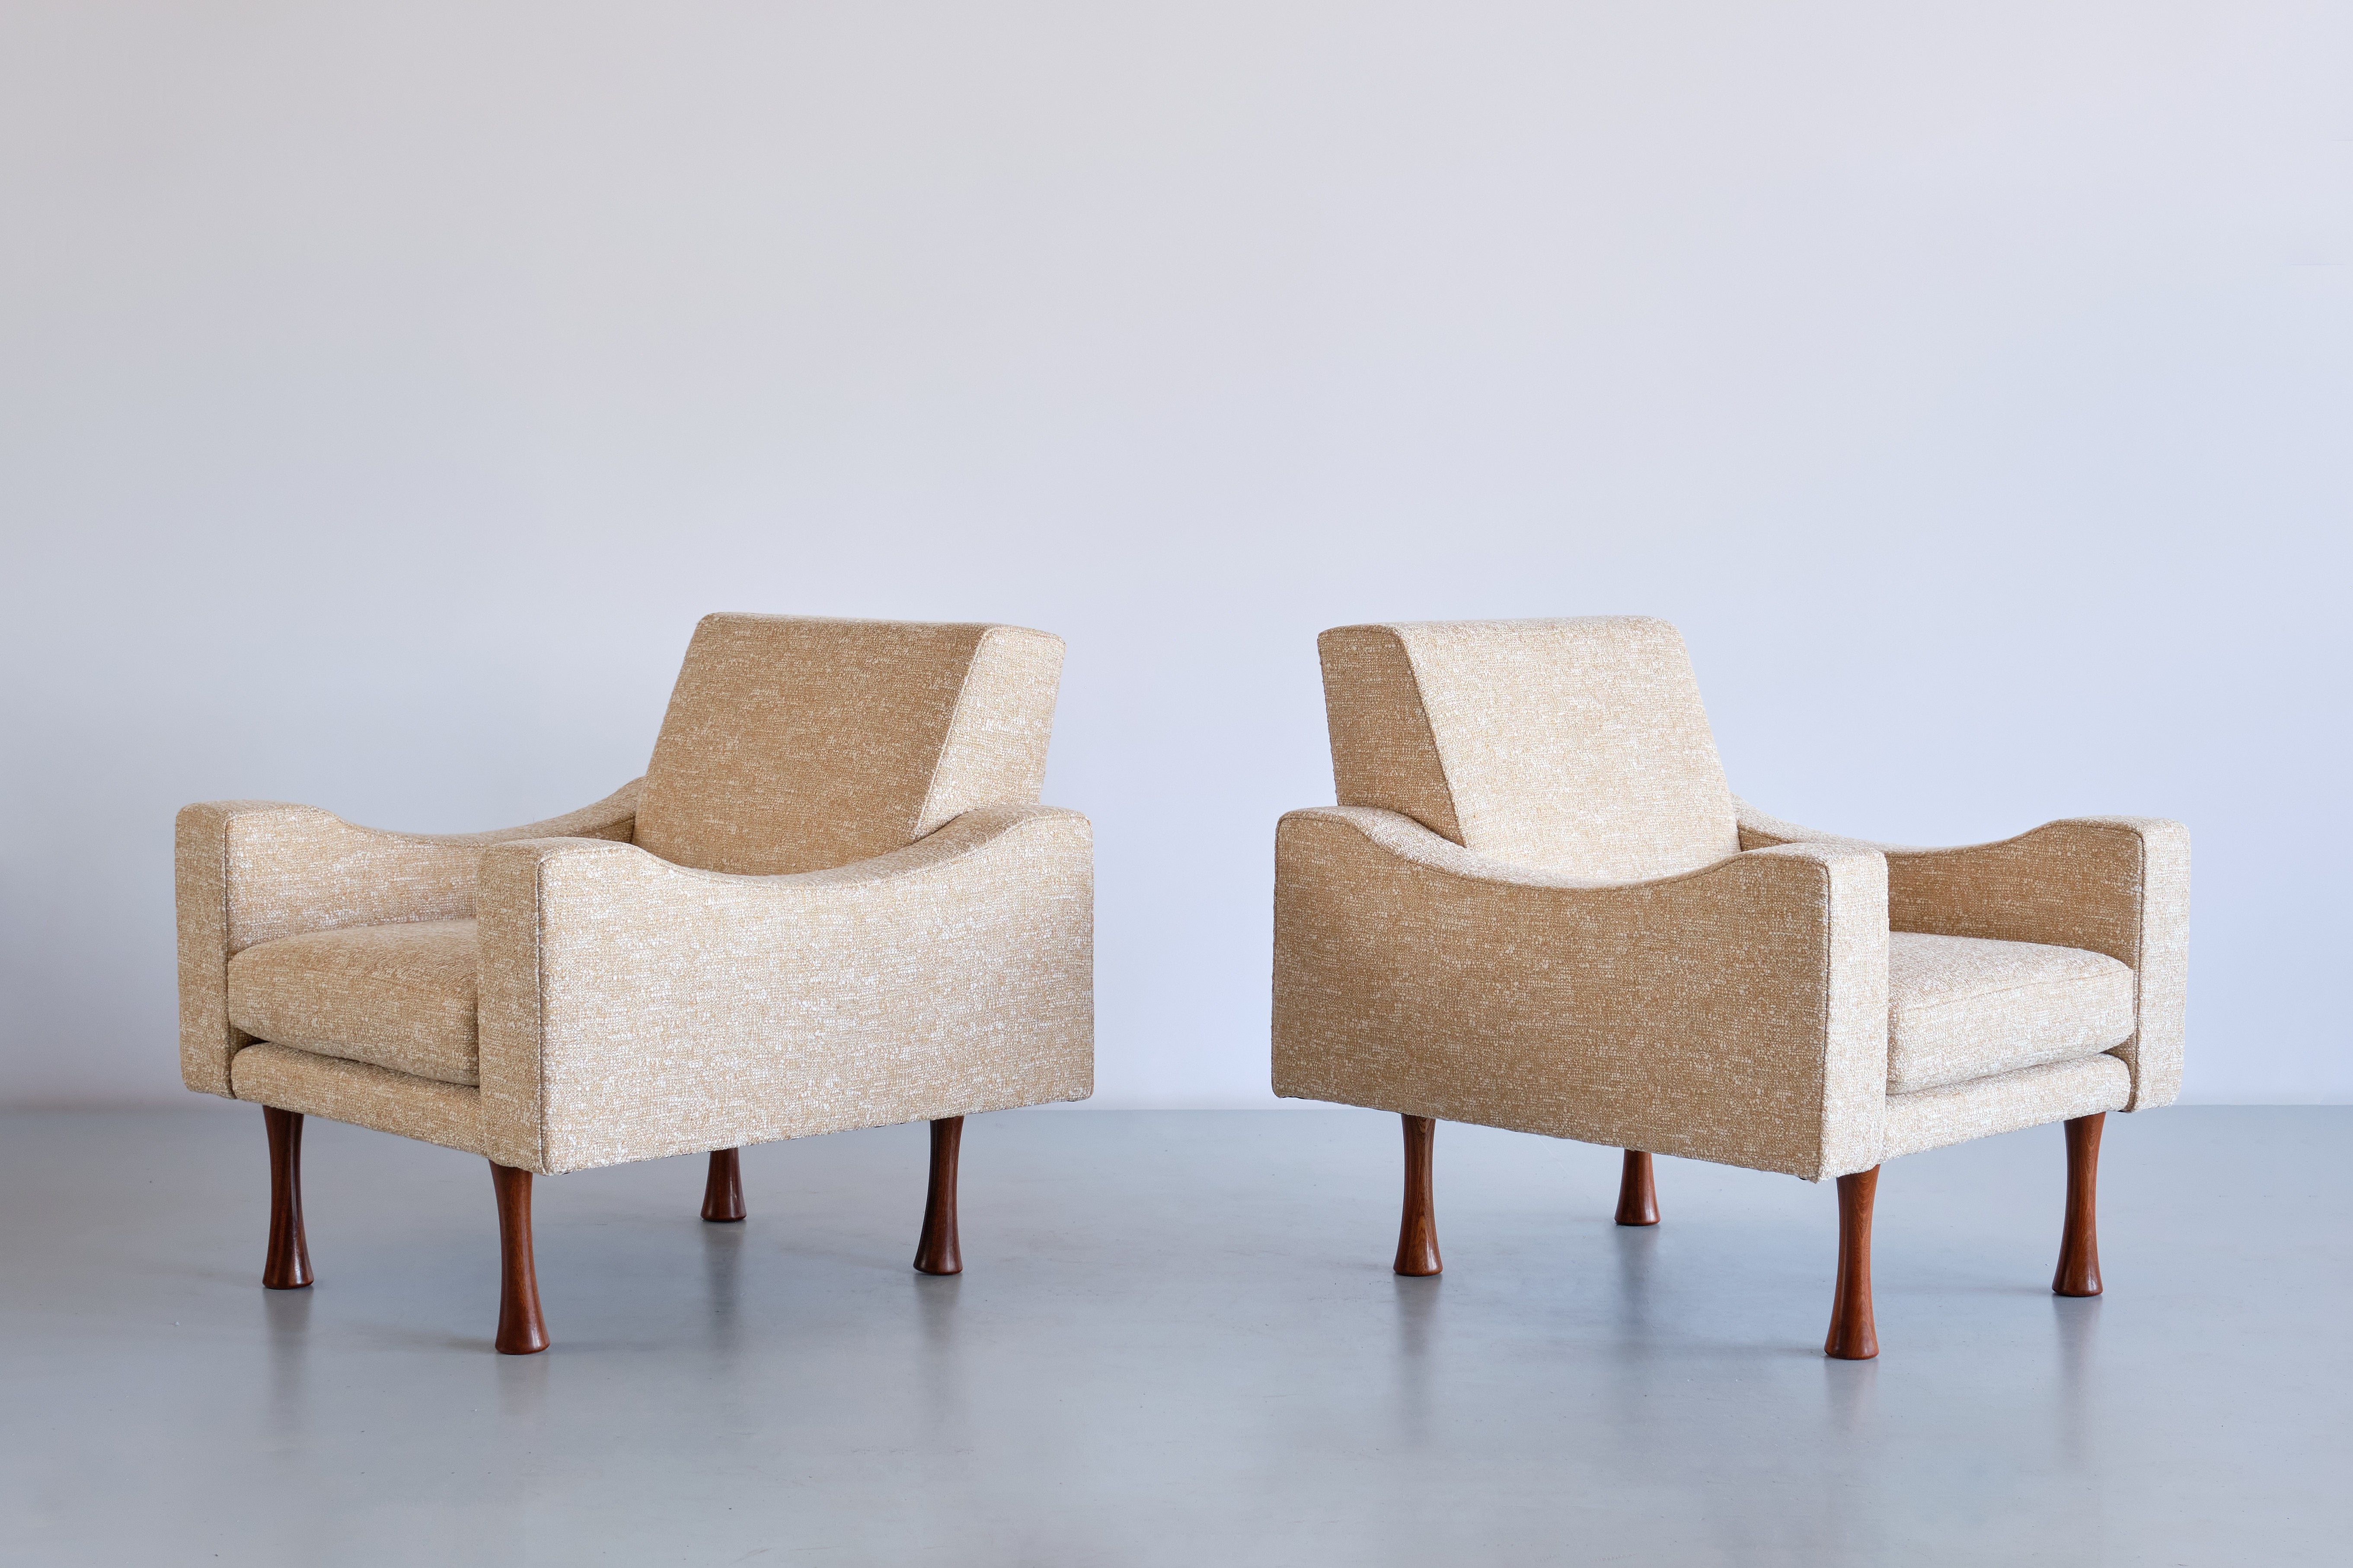 Cette paire de fauteuils très rare a été conçue par Angelo Mangiarotti et produite par le fabricant italien La Sorgente dei Mobili au début des années 1970. Le design est marqué par les formes géométriques du cadre rembourré associé à un accoudoir